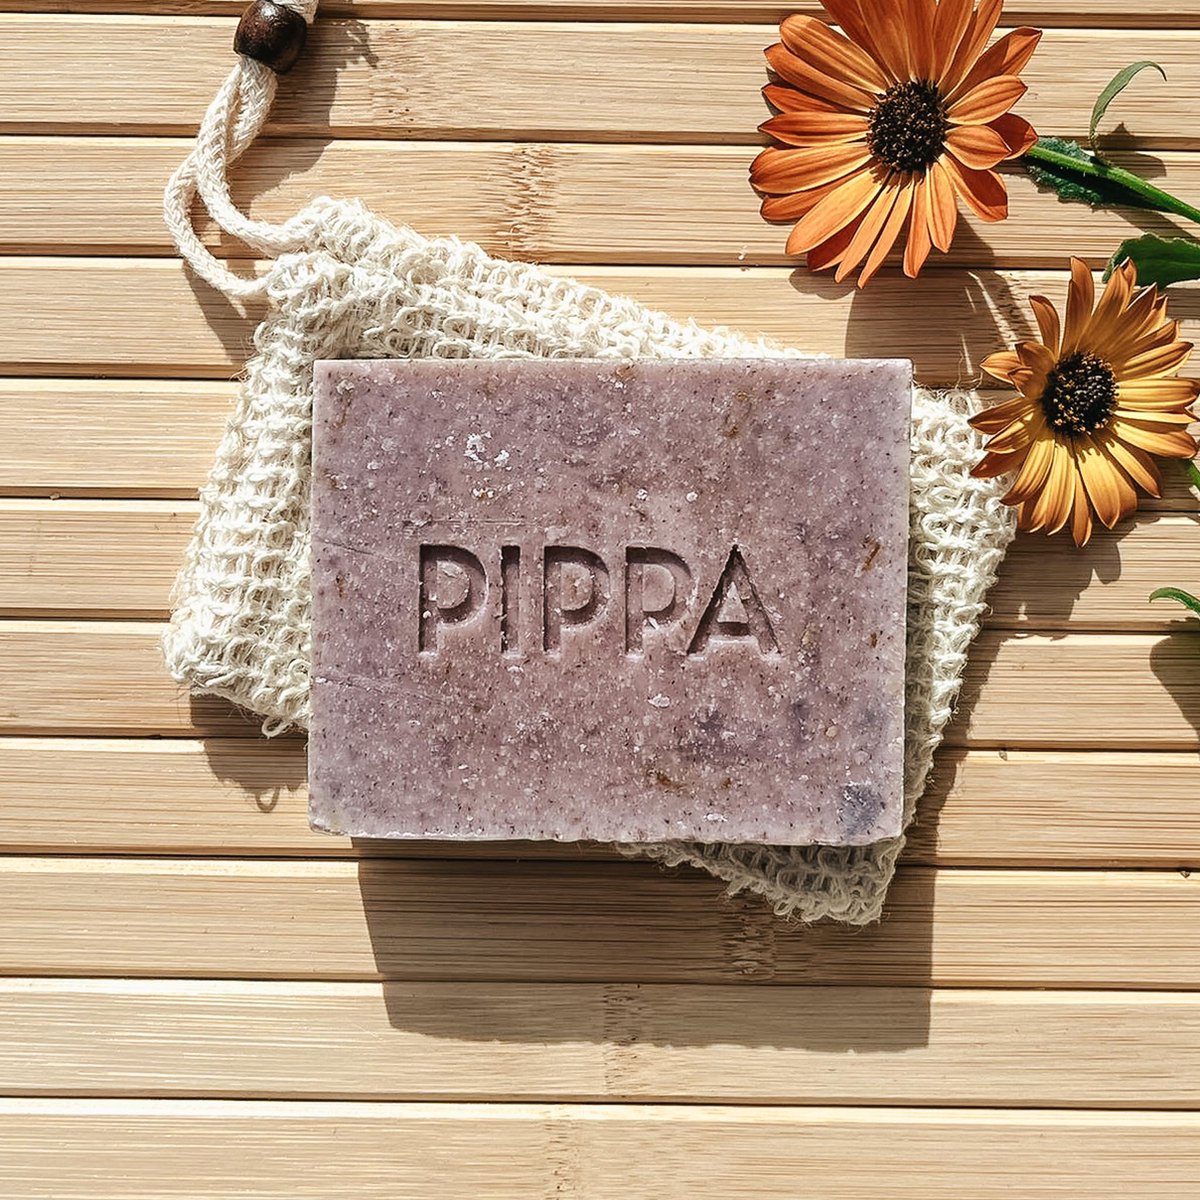 PIPPA Paardenshampoo Prickly Pear & Marigold 180G - Met Zeepzakje - Handgemaakt - 100% natuurlijk - PIPPA Equestrian Soap